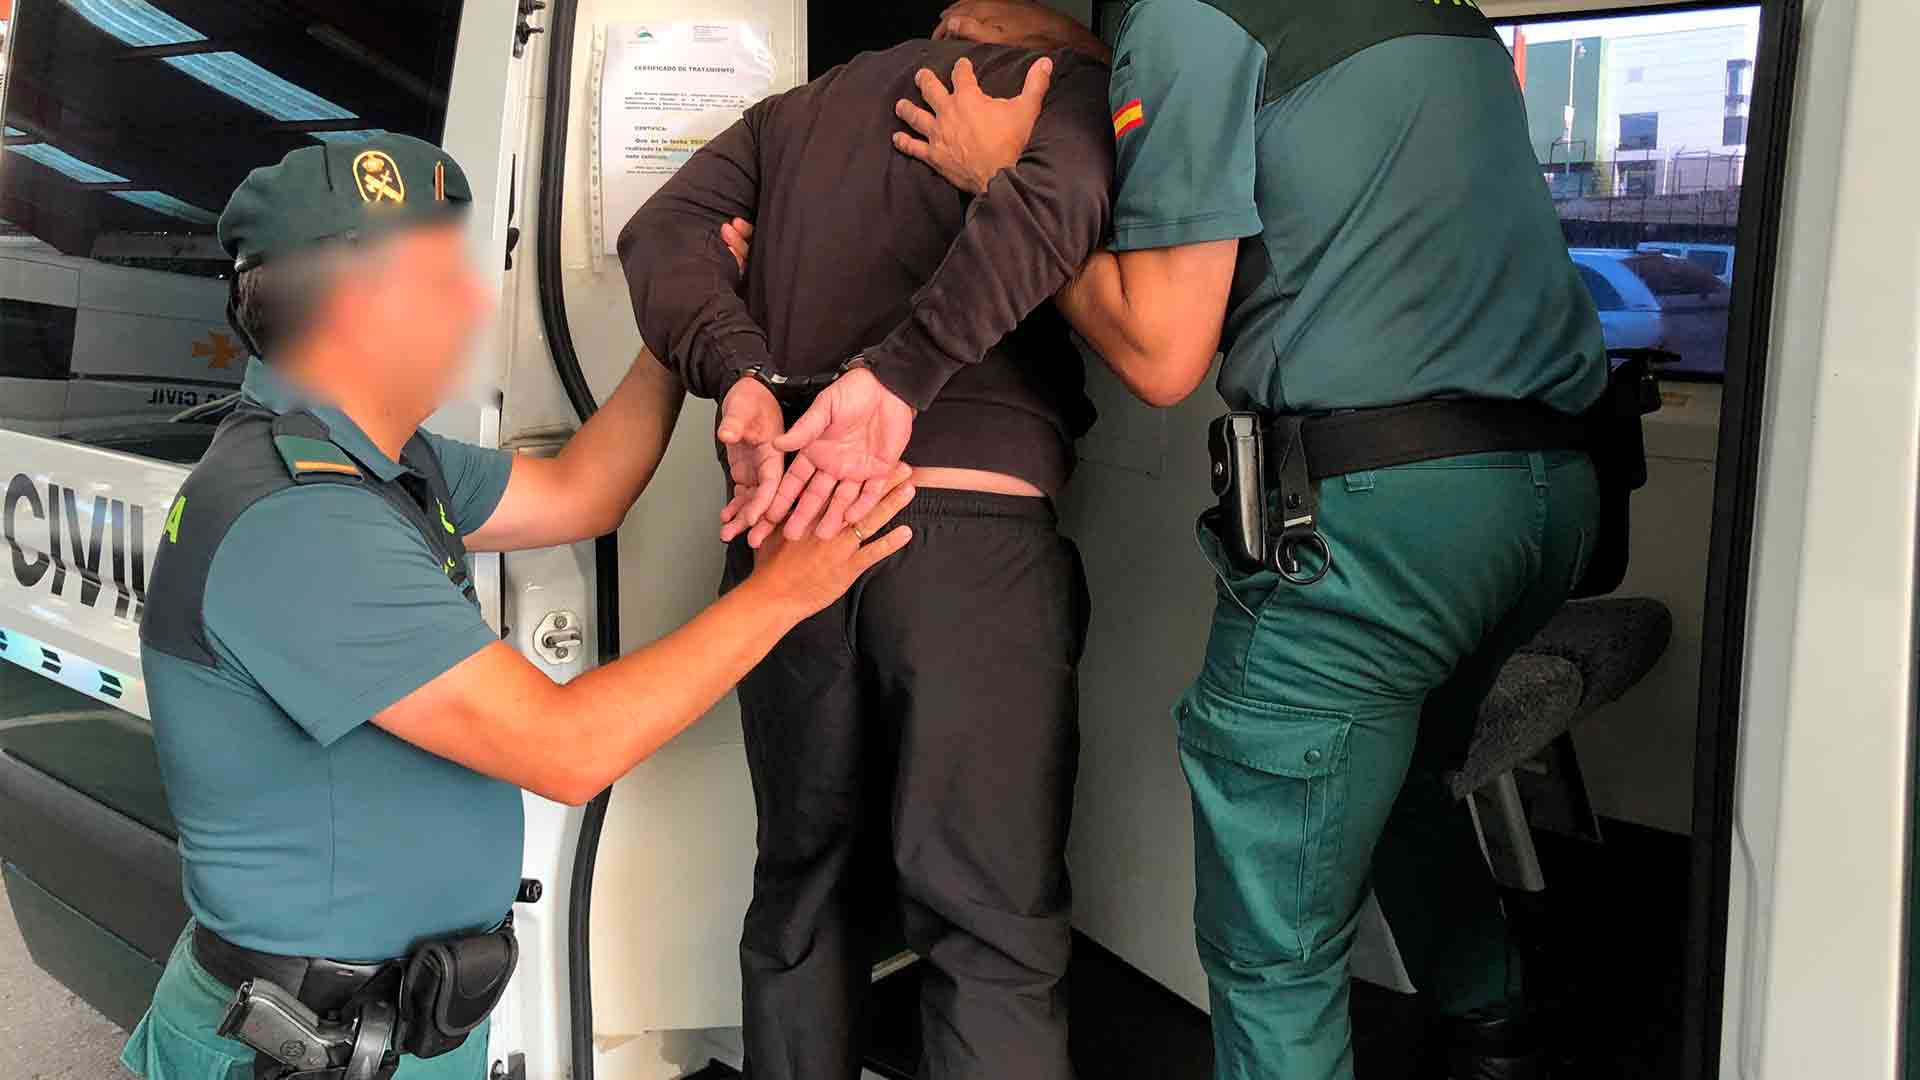 La Guardia Civil busca a un preso fugado en Zaragoza durante un traslado